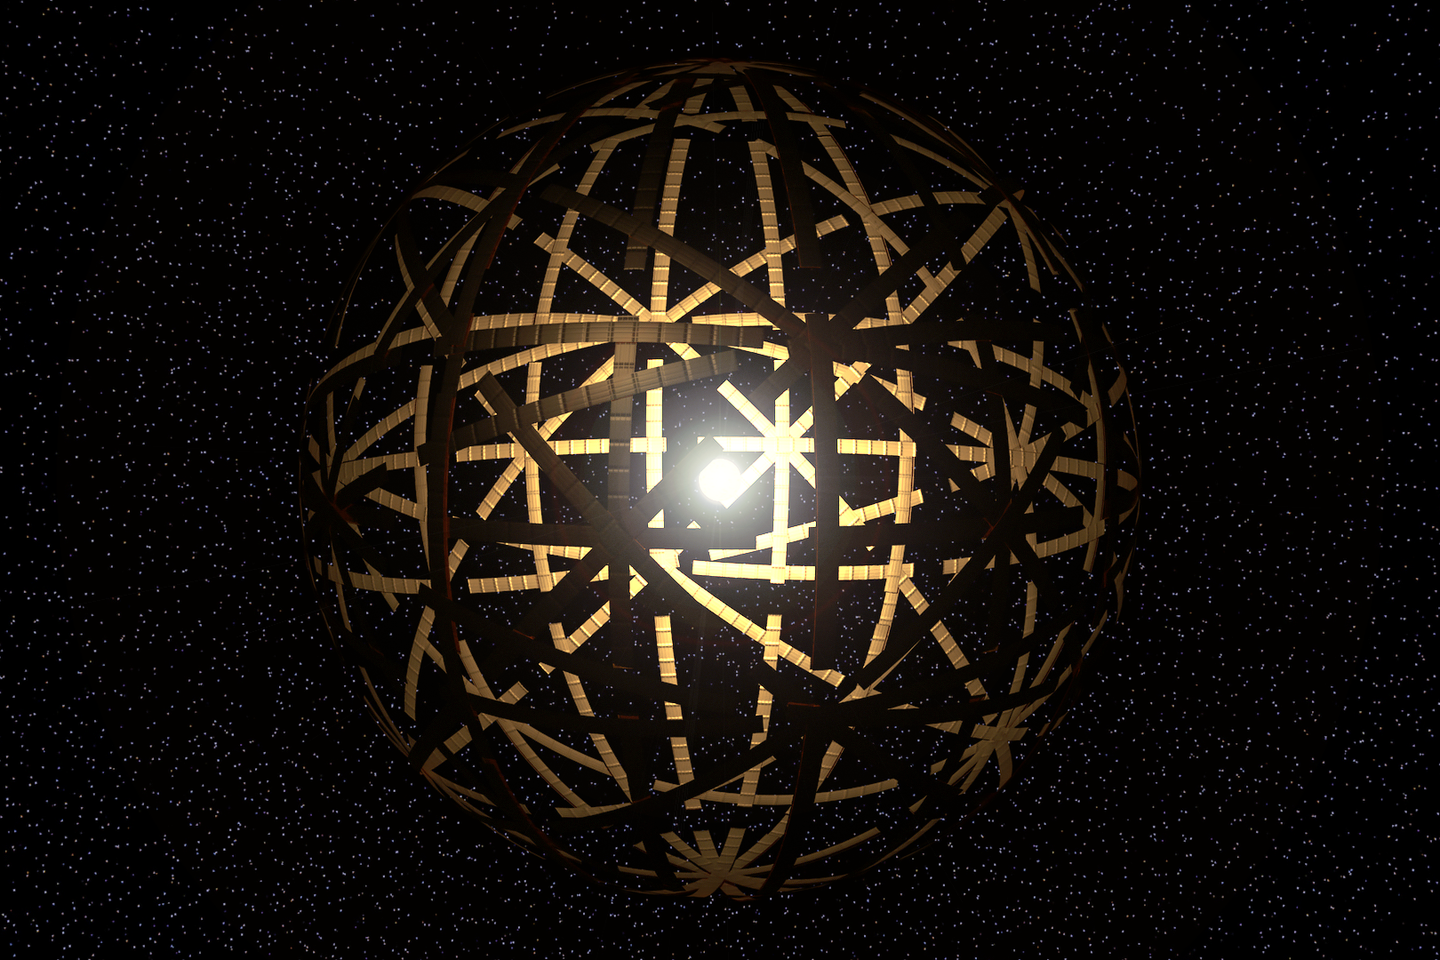  Dalinė Dysono sfera, arba Dysono spiečius – nemenką žvaigždės paviršiaus dalį užstojantis megastruktūrų kompleksas.<br> Wikimedia commons